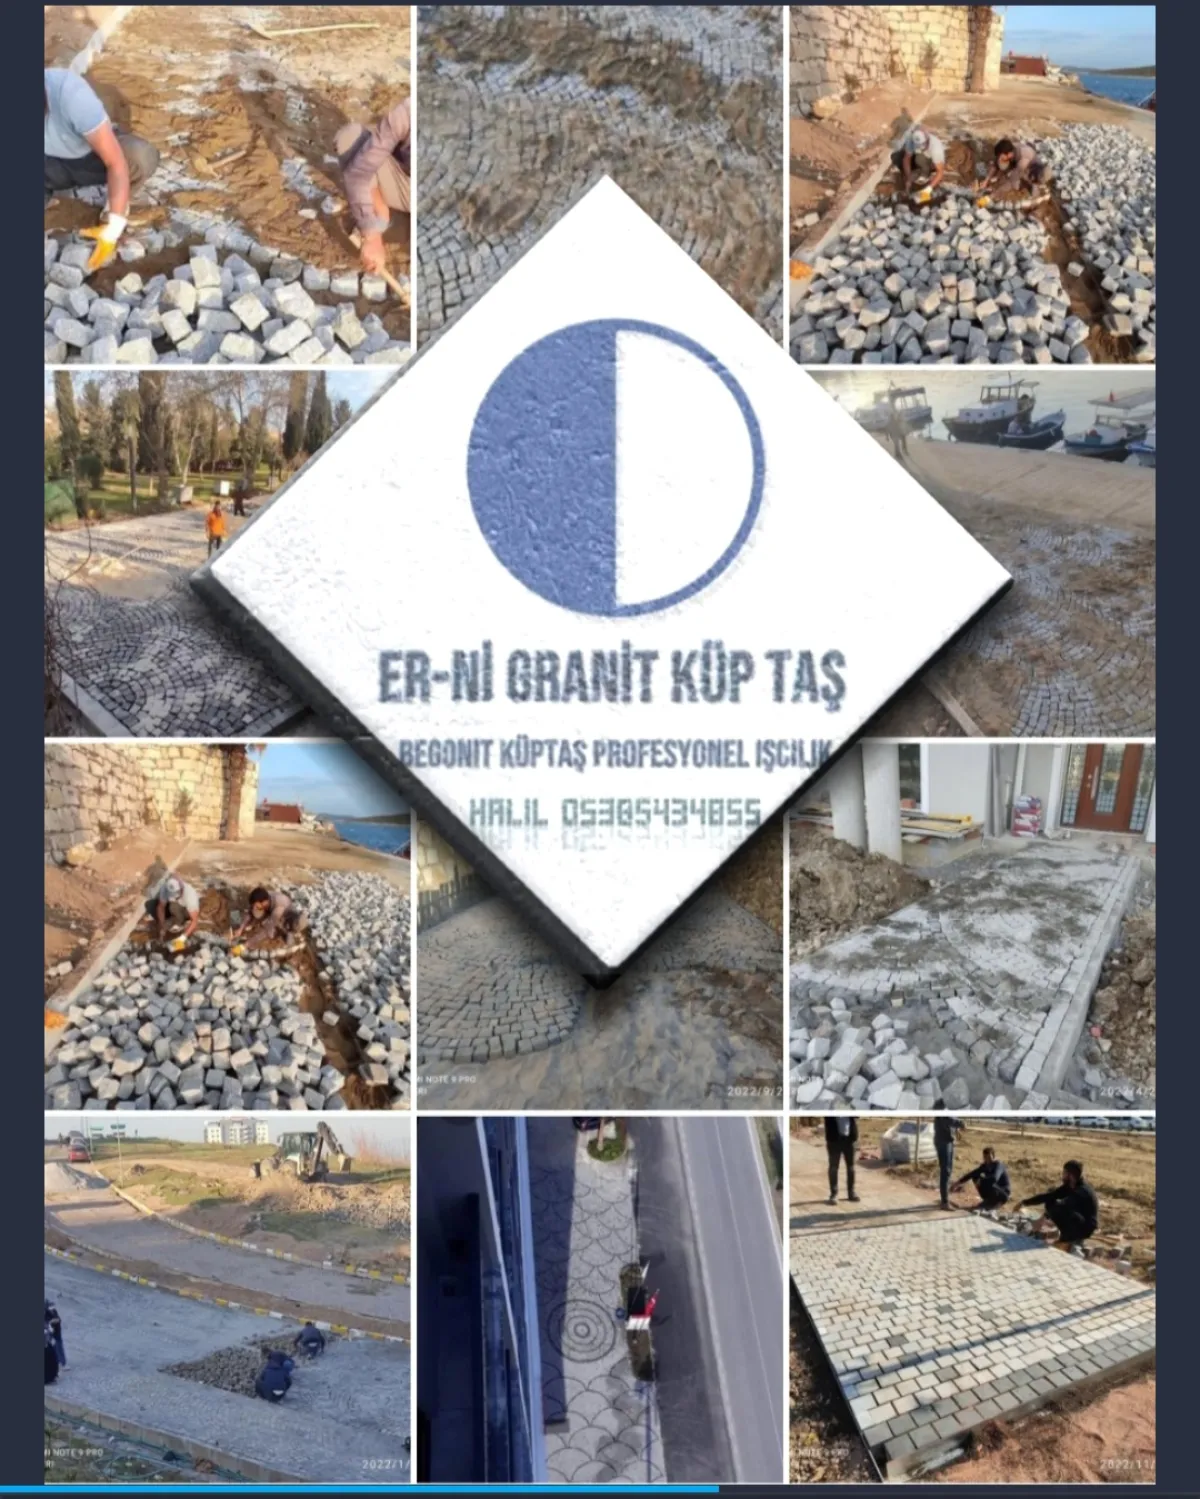 Erni granit küp taş uygulama ekibi İzmir merkez - Büyük 3